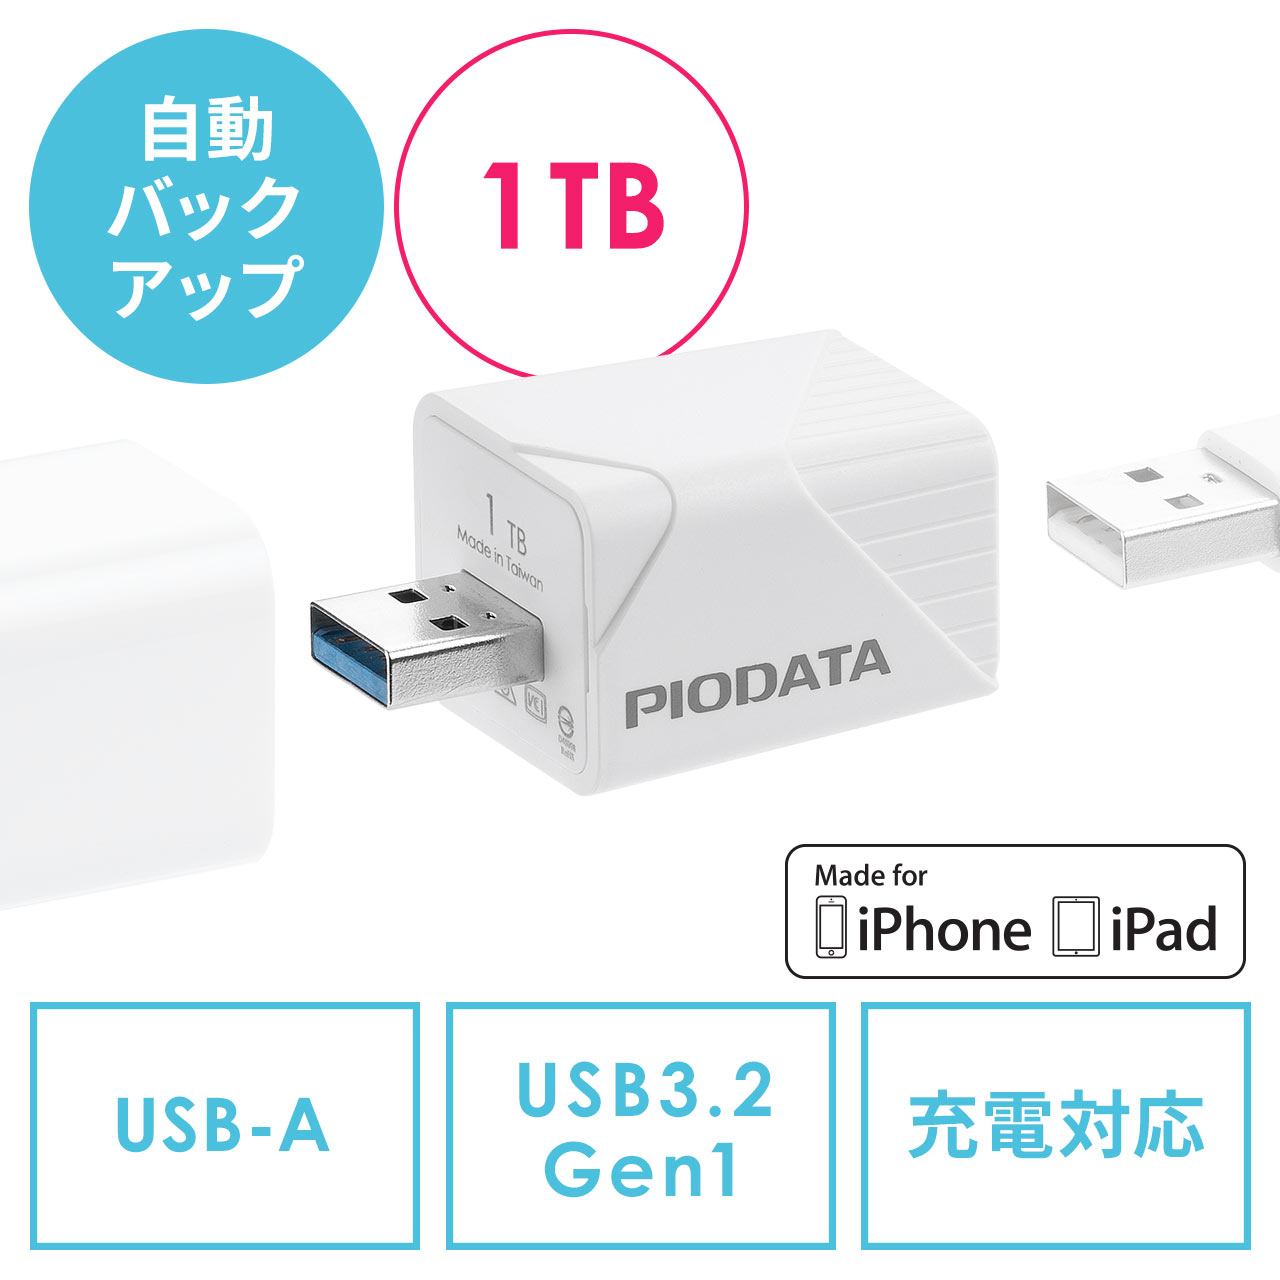 iPhone iPad バックアップ USBメモリ 1TB MFi認証  USB3.2 Gen1(USB3.1/3.0) 600-IPLA1TB3